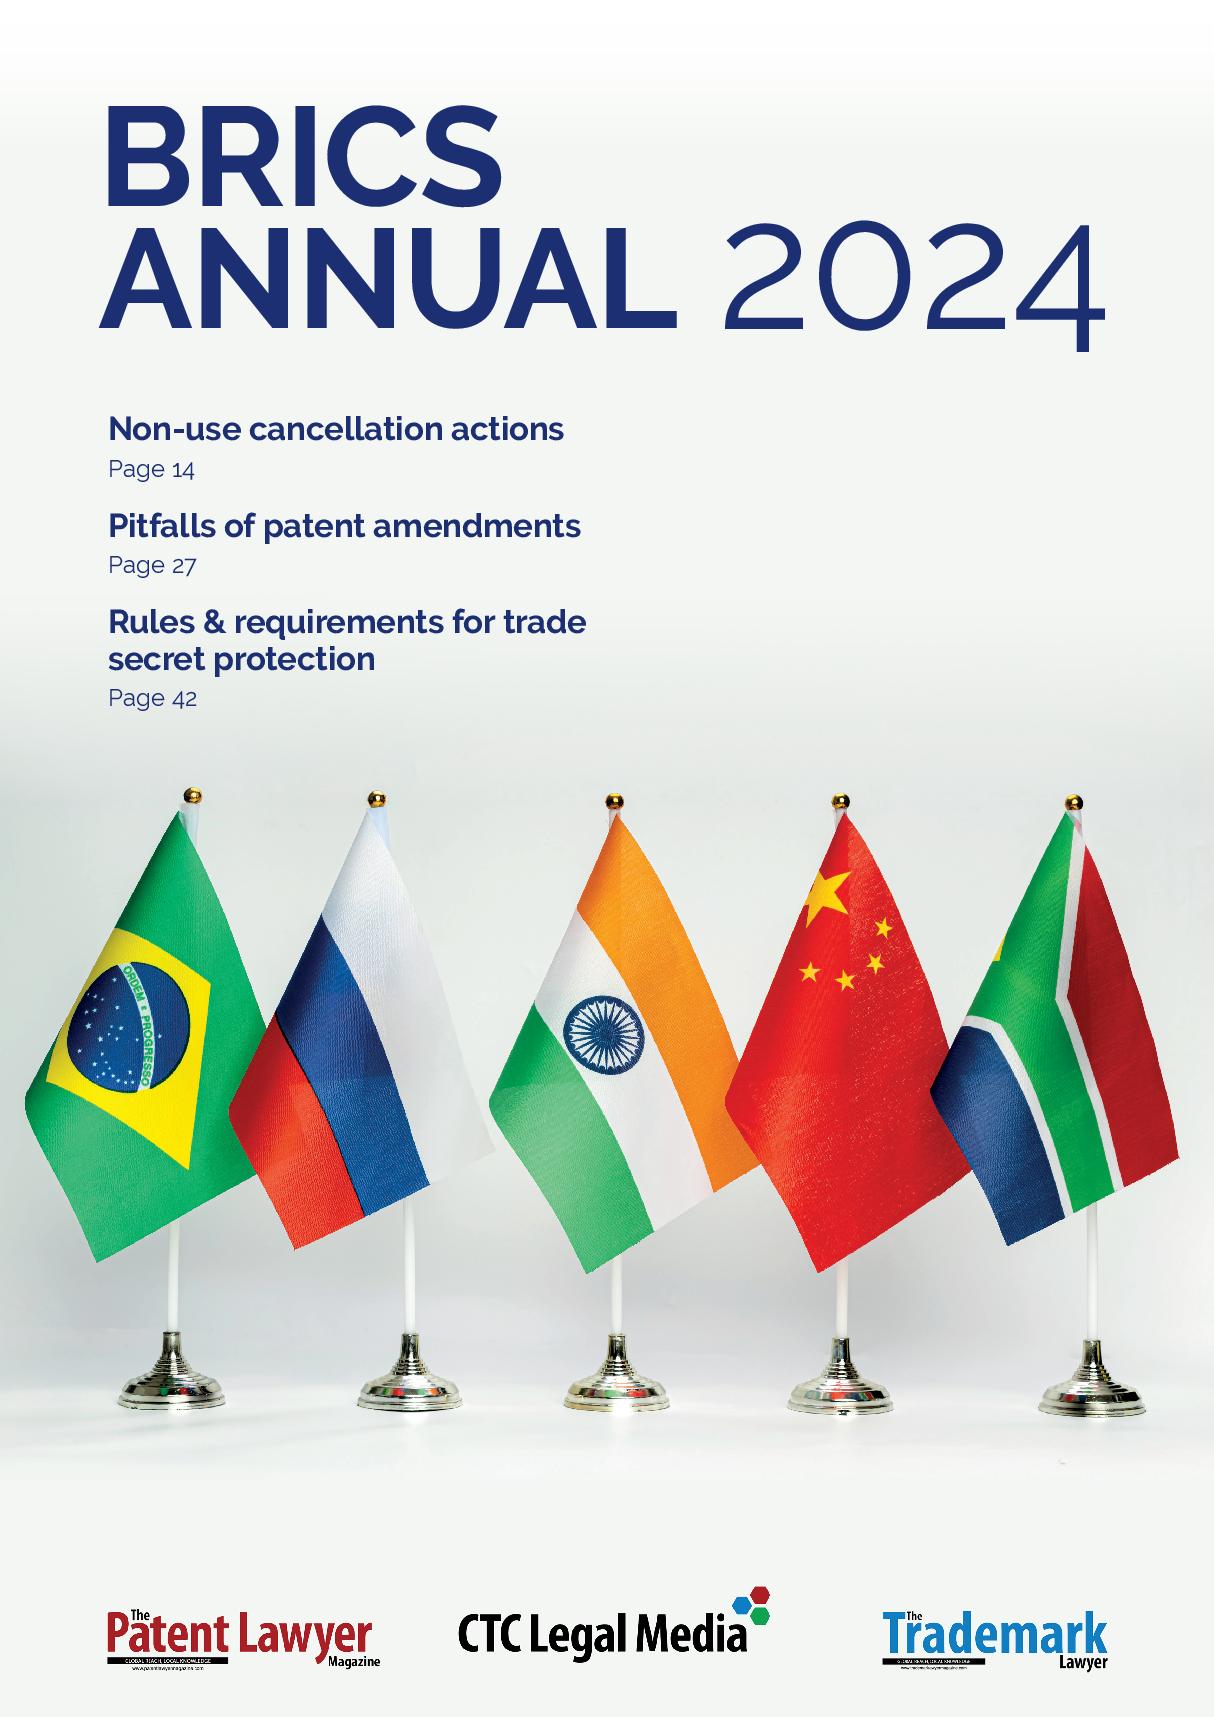 BRICS Annual 2024